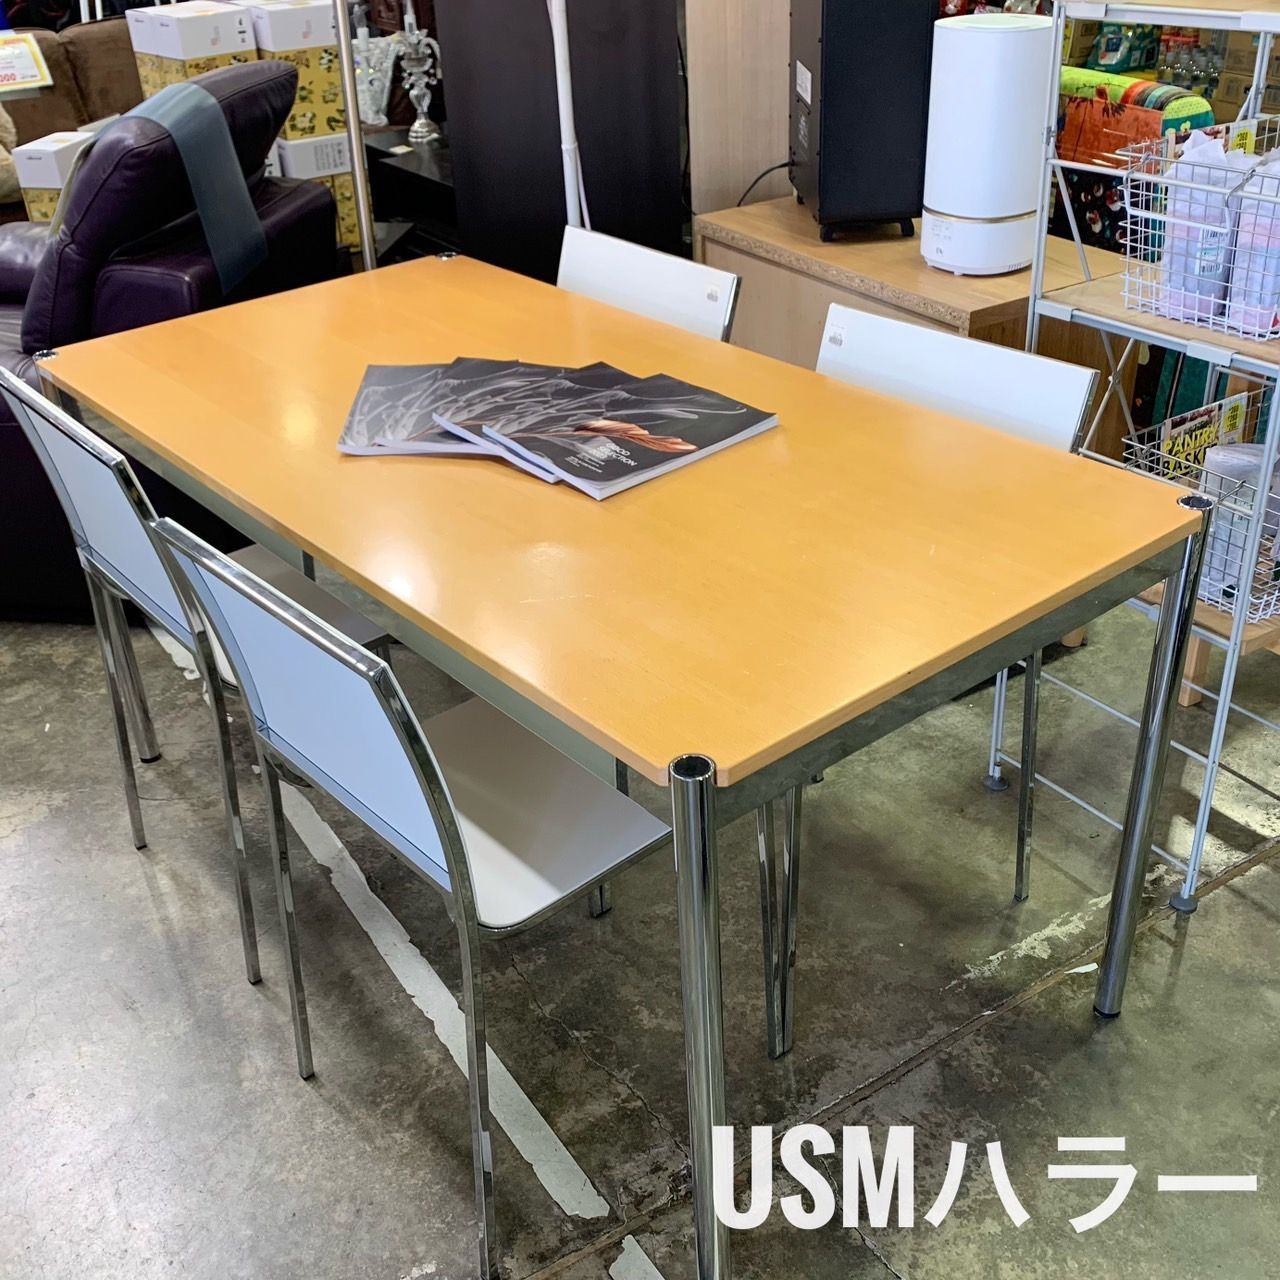 USM ハラー ハラーテーブル W150 ワークテーブル ミーティングテーブル 